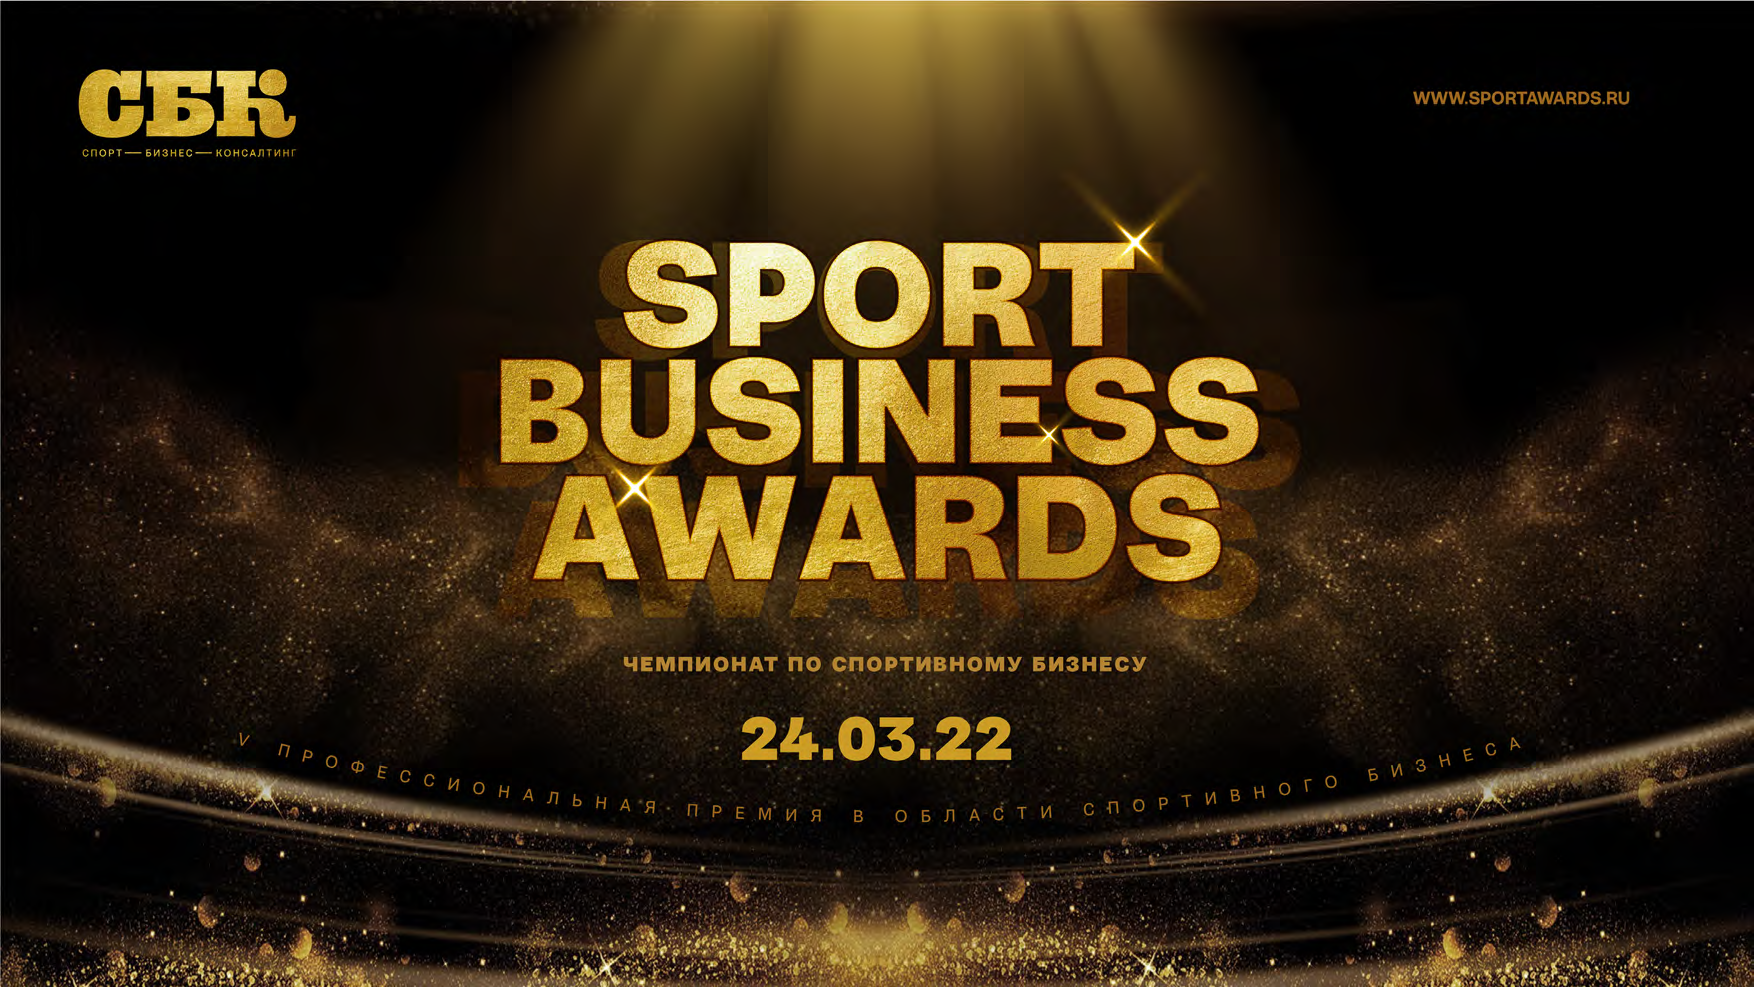 Обладатели пятой премии Sport Business Awards будут названы 24 марта 2022 года